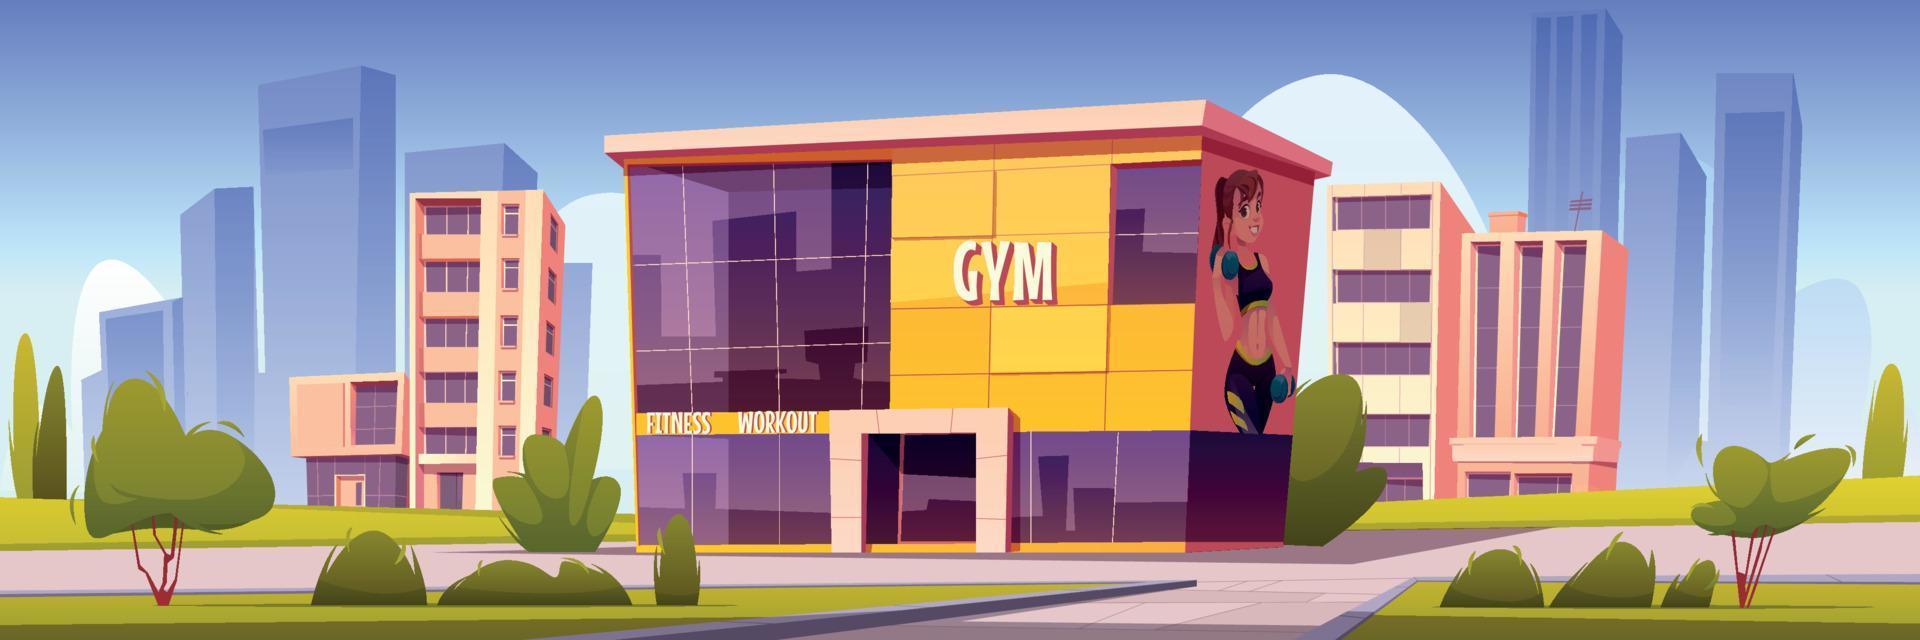 bâtiment de gym, maison de sport moderne dans la ville d'été vecteur